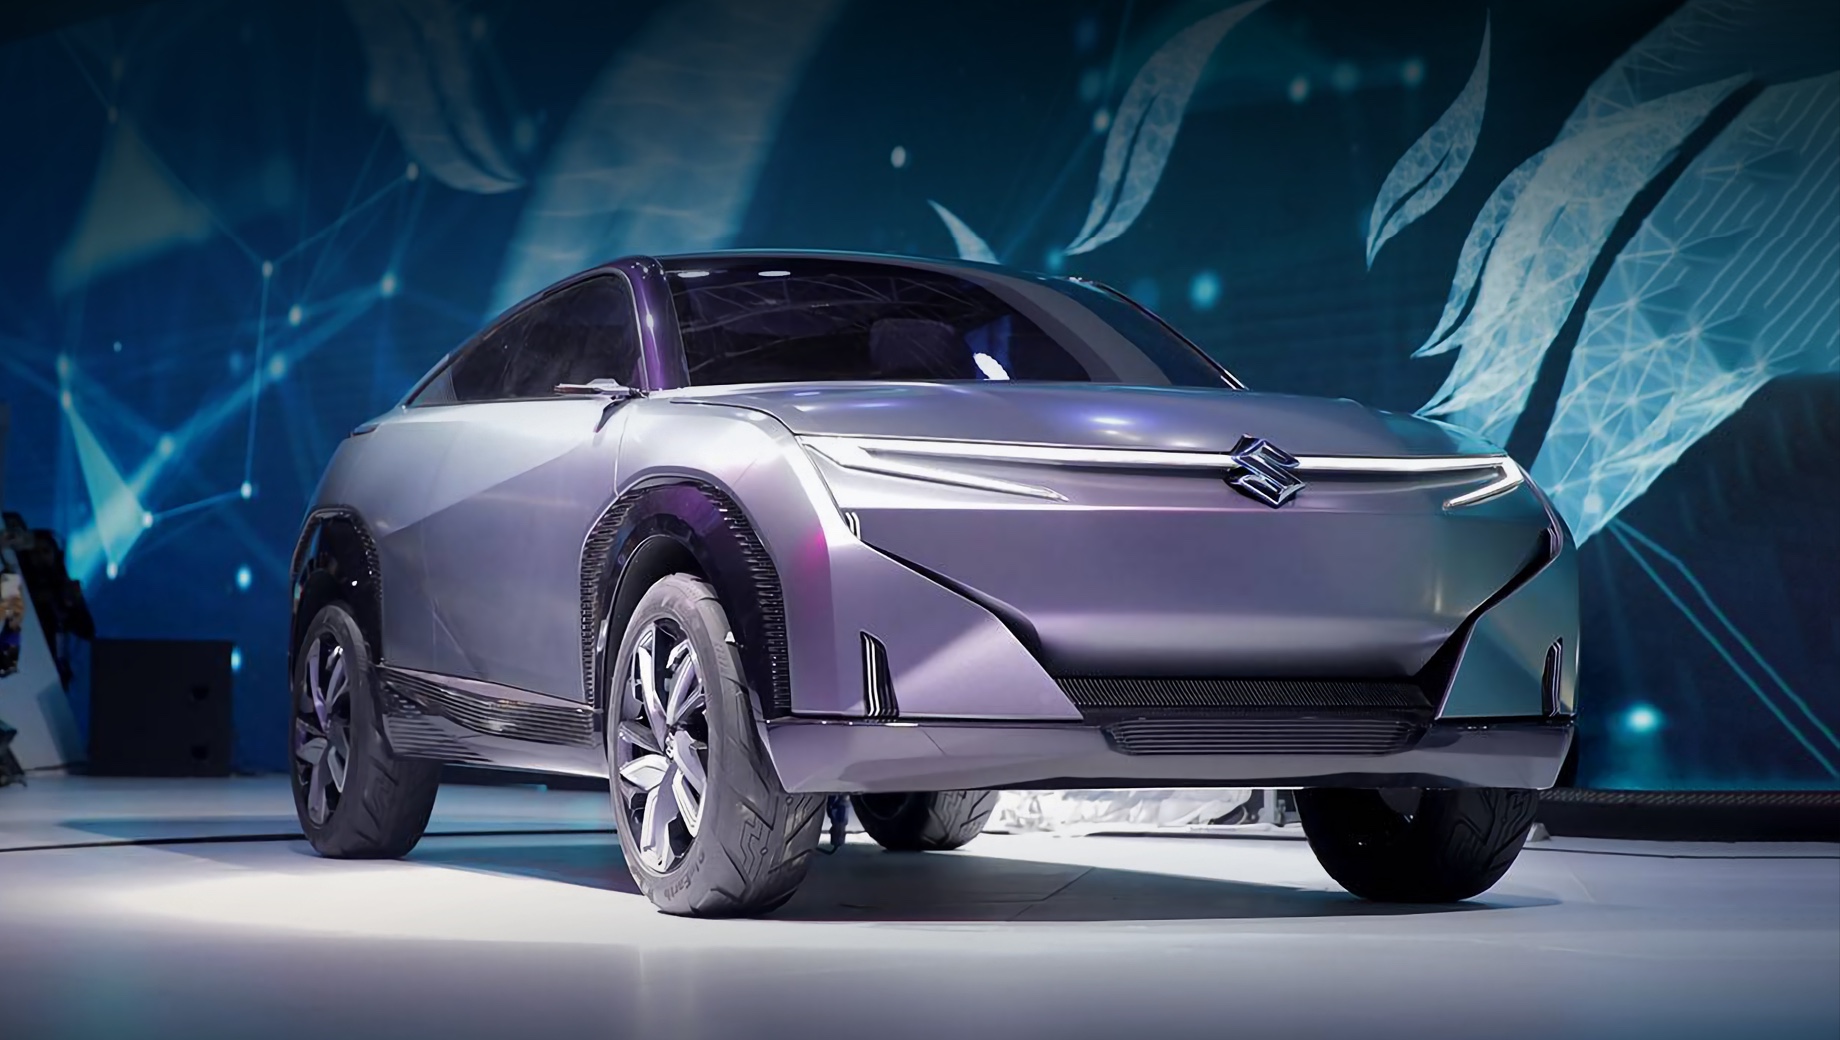 Suzuki maruti. «Зелёный» концепт Futuro-e (2020) предвещал не электромобиль, а очередной гибрид, которыми Suzuki занимается с 2015-го. На звание EV-первенца, по данным индийских СМИ, претендует кей-кар Wagon R. 